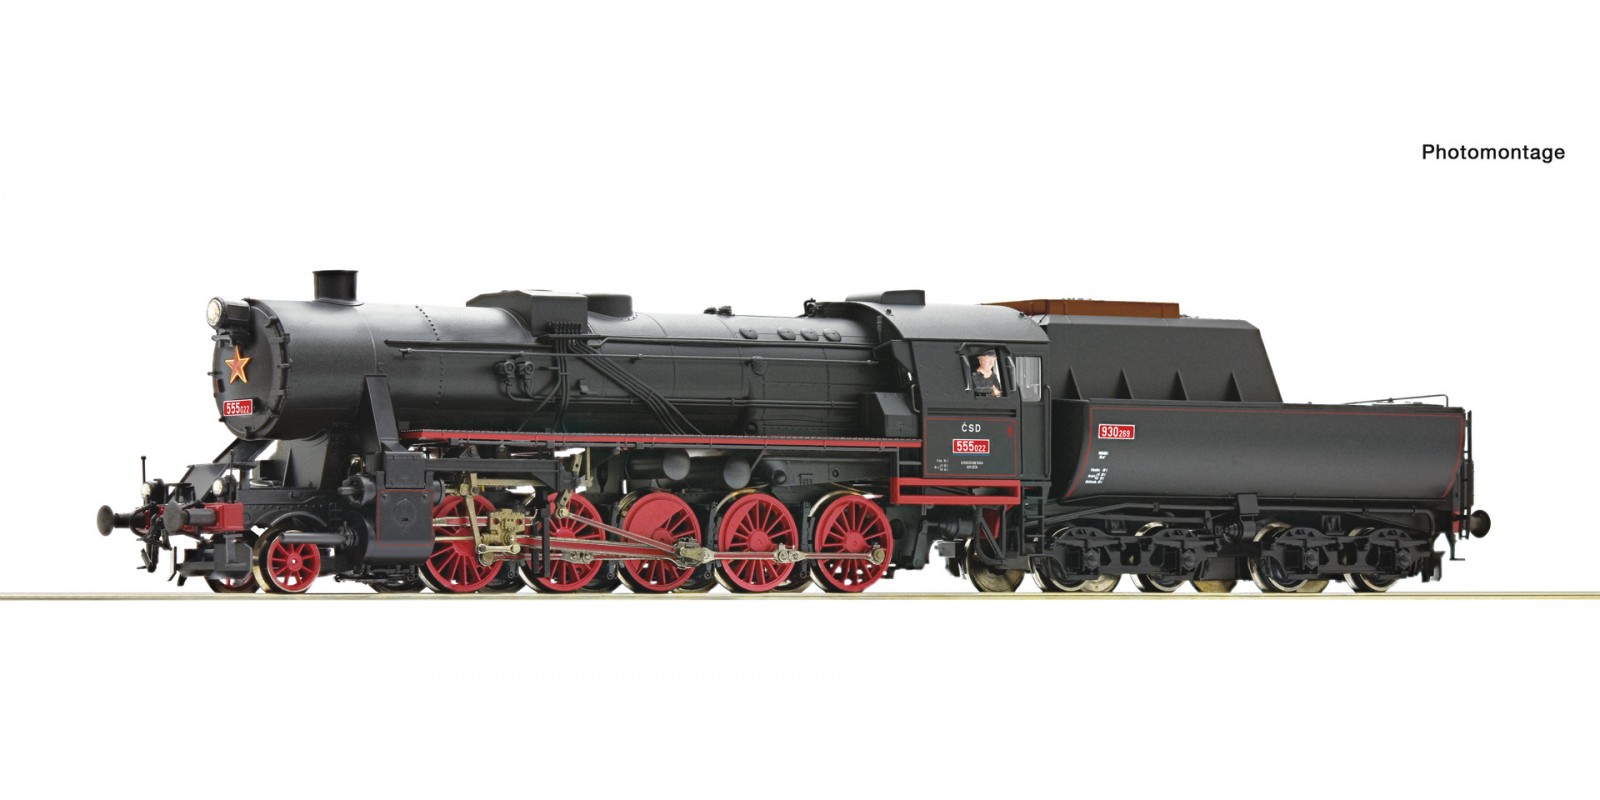 RO7100001 Steam locomotive class 555.0, CSD